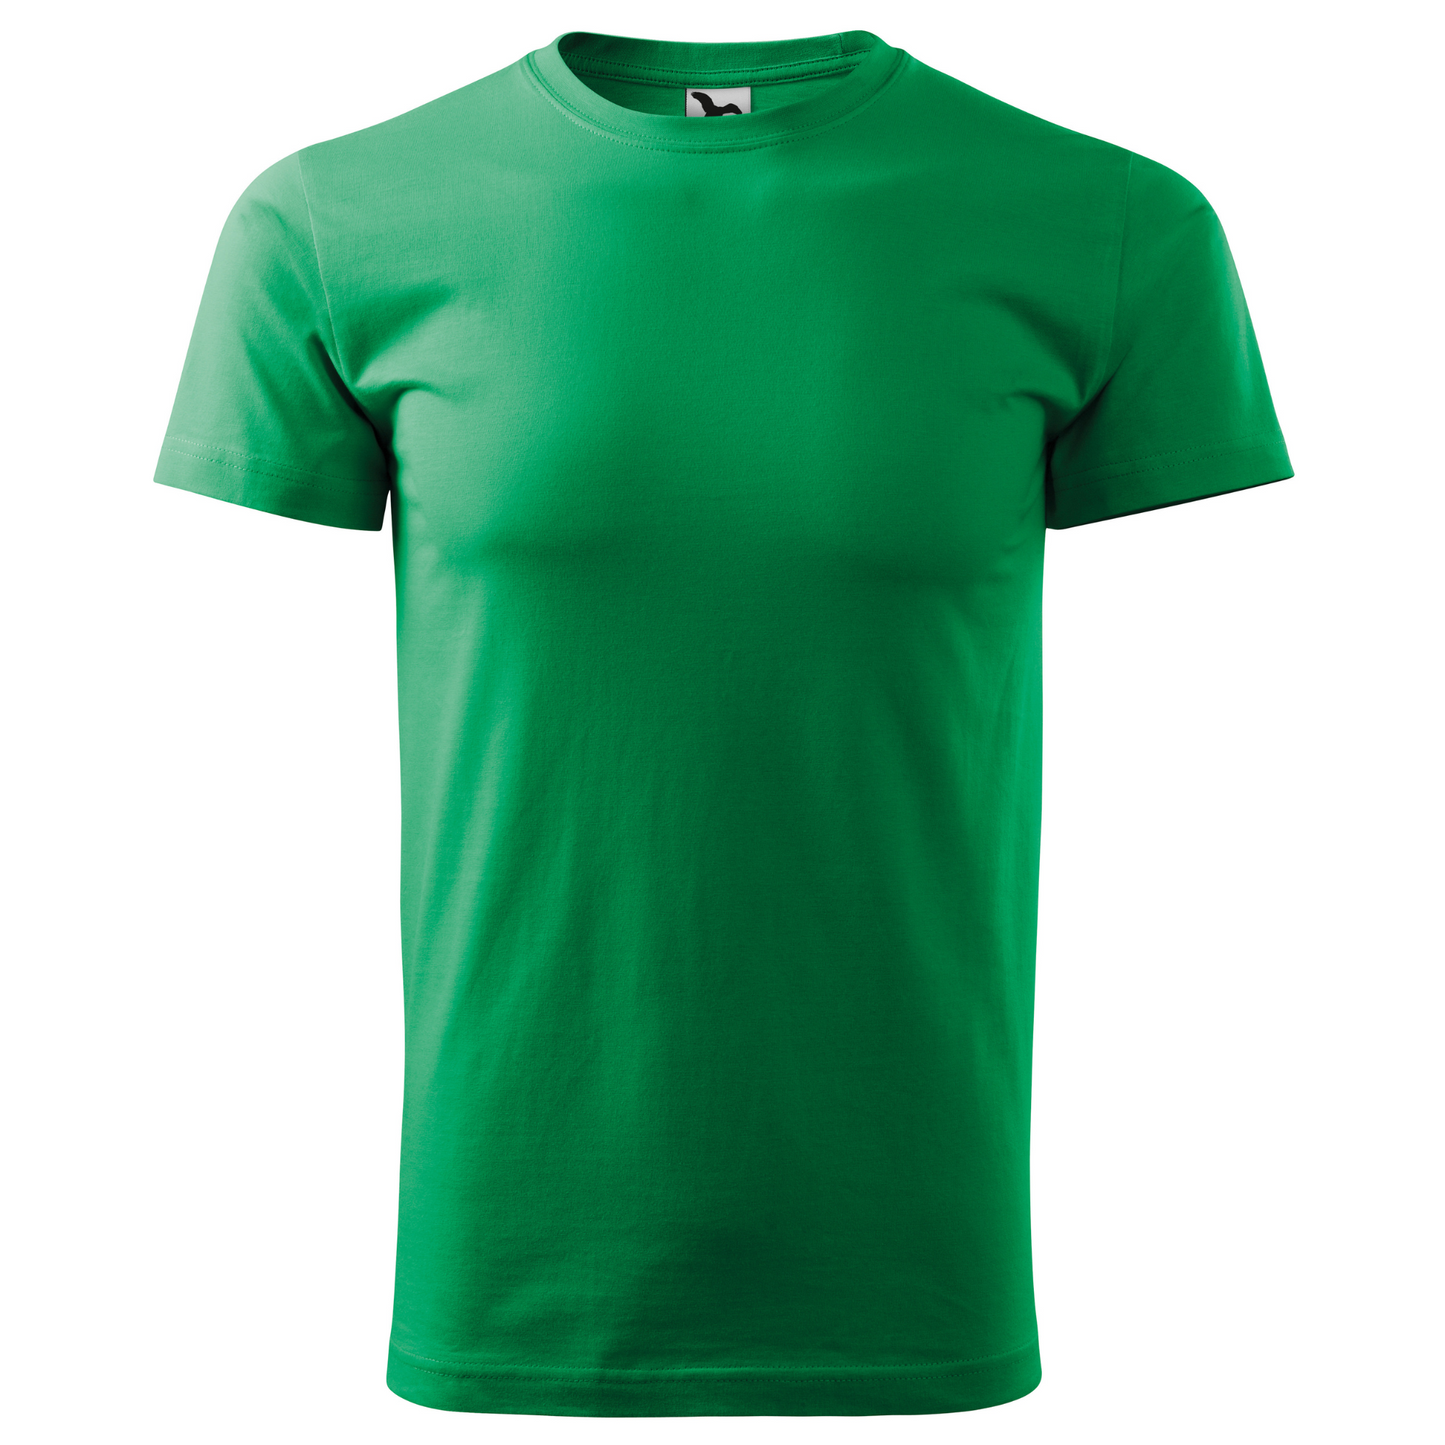 Tricou barbat - Variatii Verde